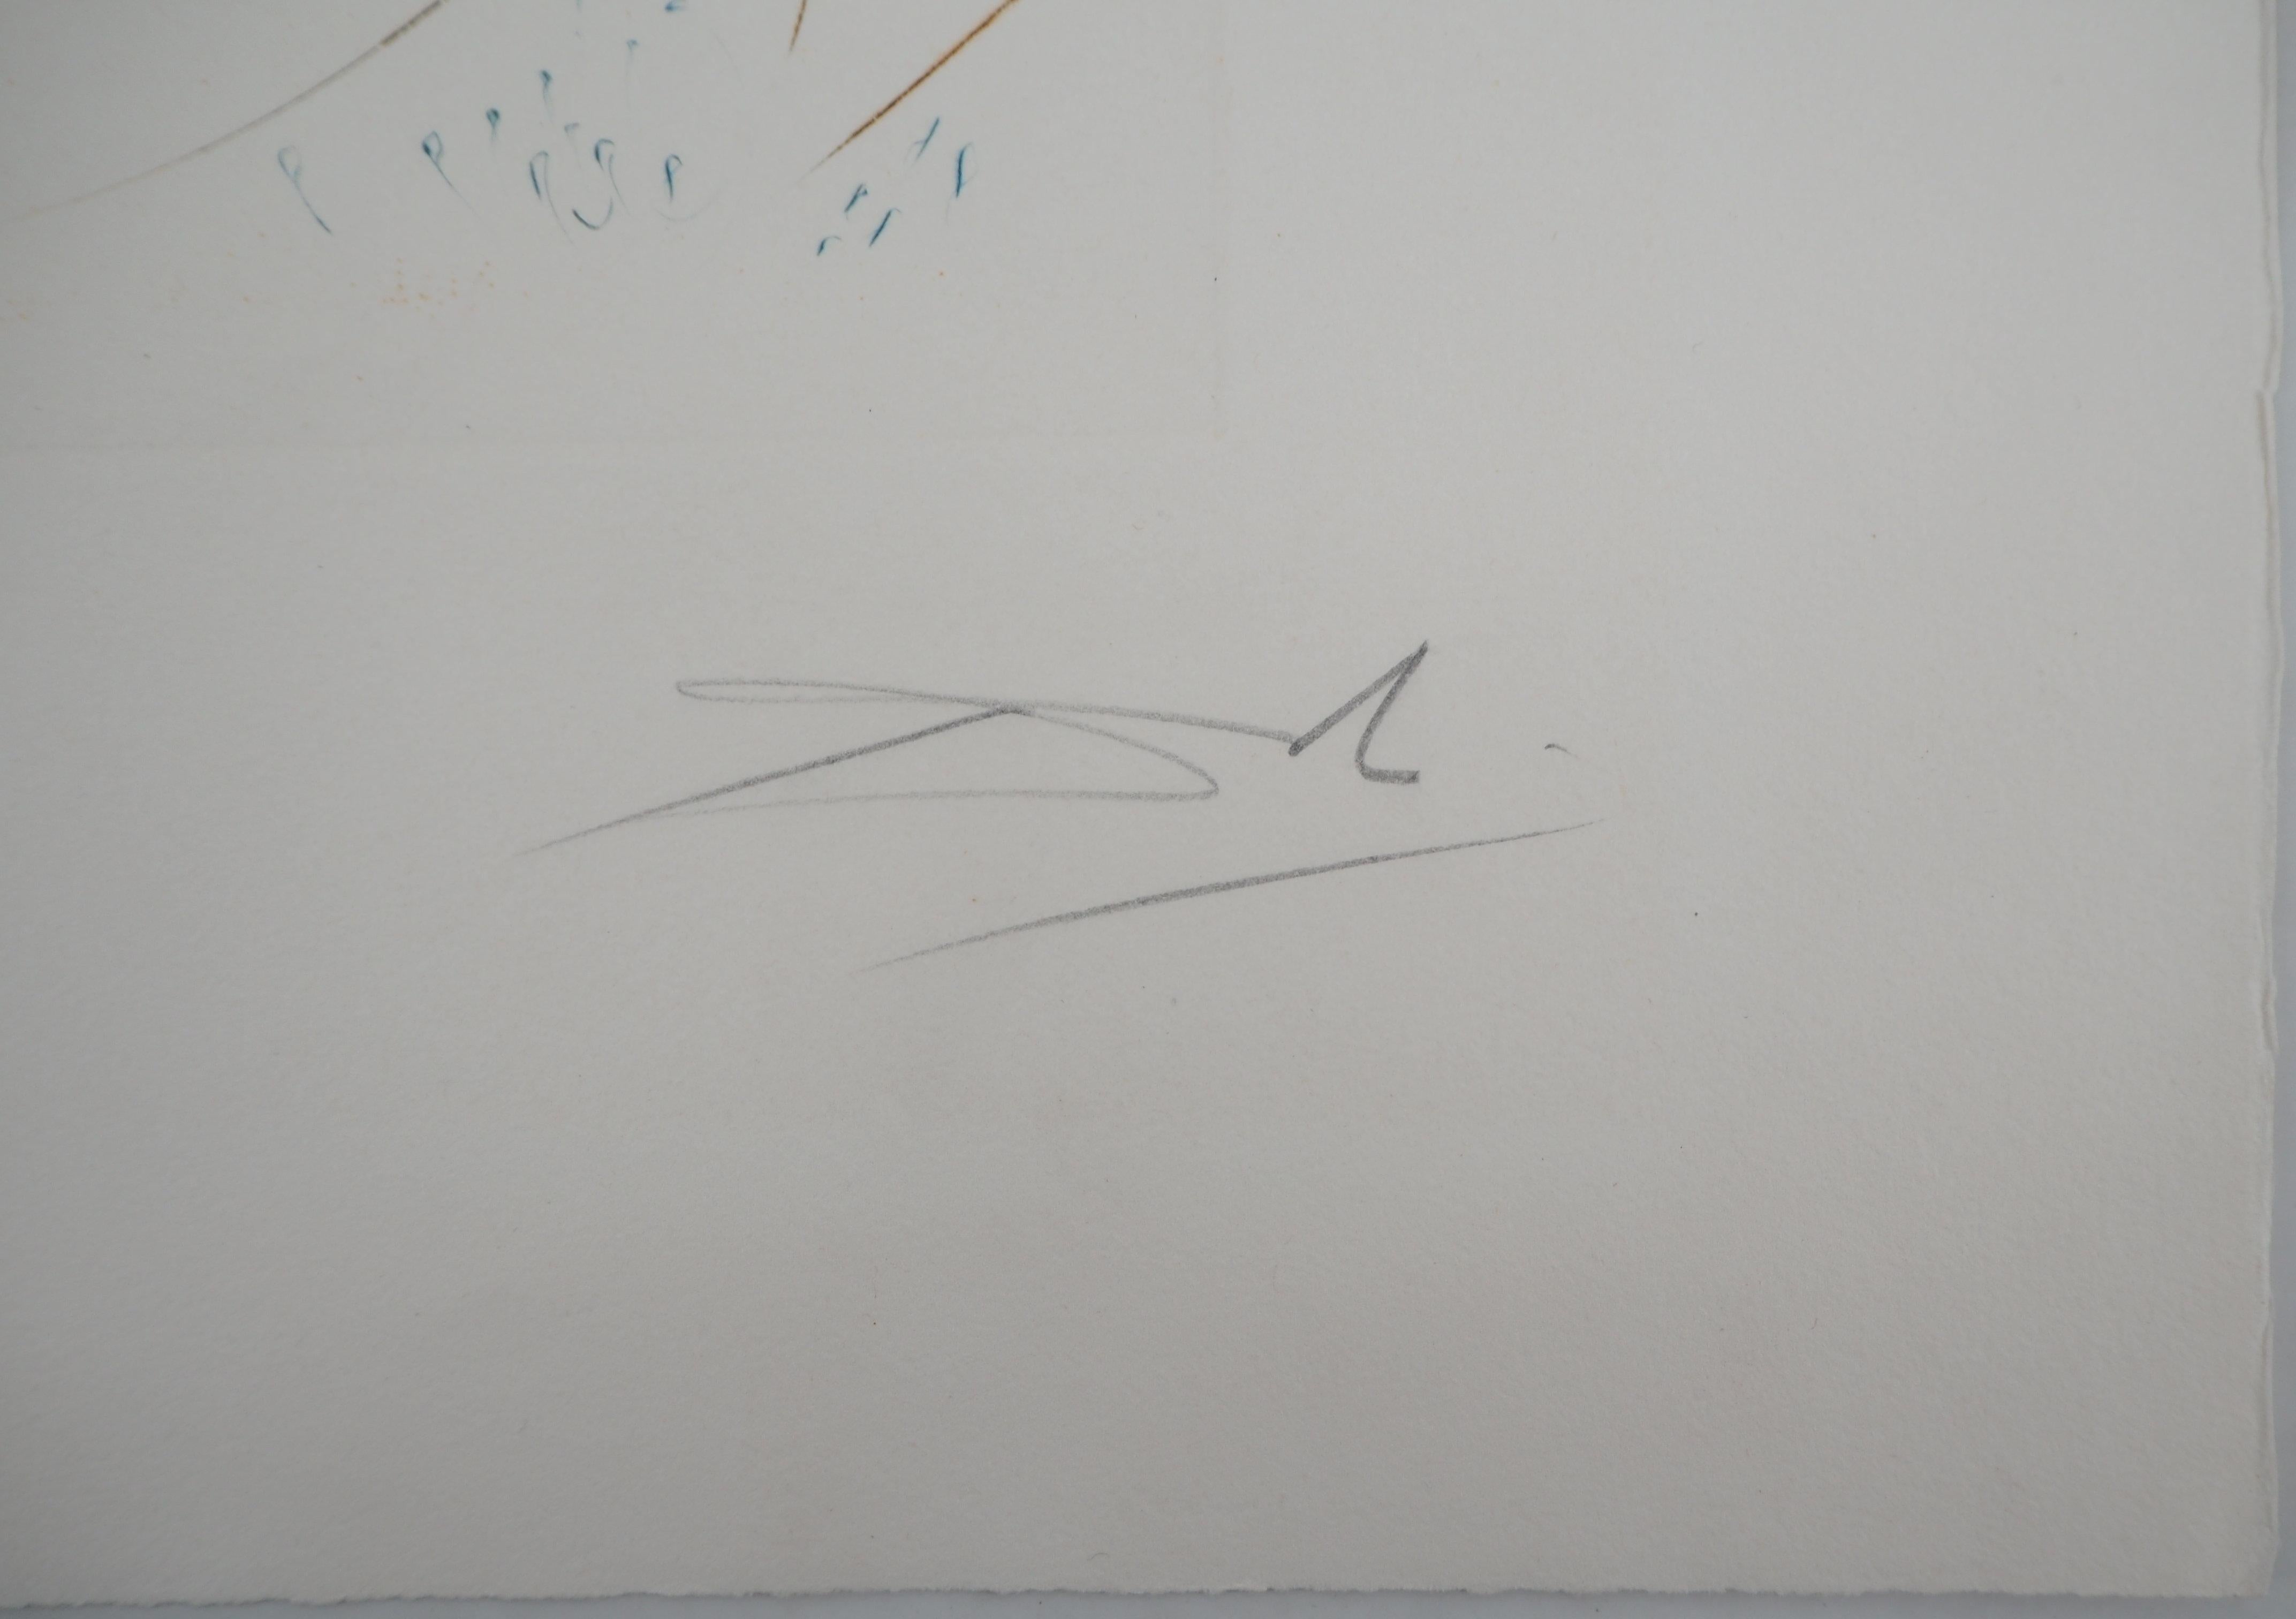 Salvador DALI
Surrealistisches Boot (Vaisseau fantome), 1969

Original-Radierung
Handsigniert mit Bleistift
Nummeriert /200
auf Rives BFK Pergament 58 x 45 cm (ca. 23 x 18 Zoll)

REFERENZEN : 
- Katalog der Rechtsgrundlagen Feld 69-7 
- Katalog